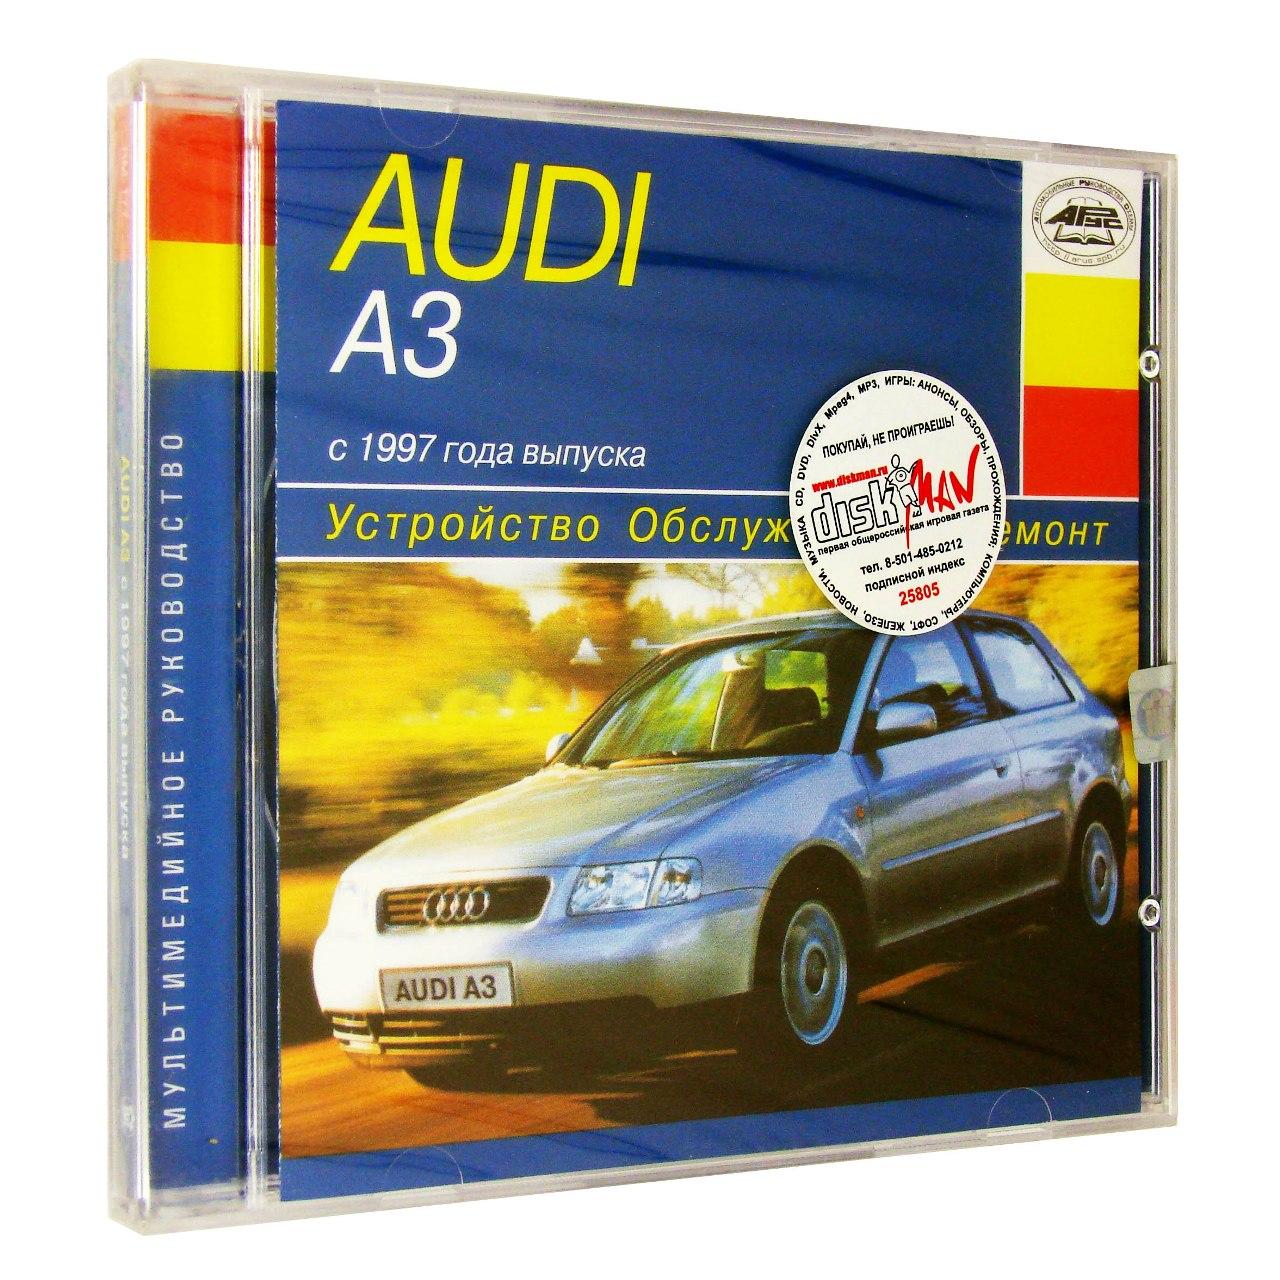 Компьютерный компакт-диск Audi A3: УСТРОЙСТВО ОБСЛУЖИВАНИЕ РЕМОНТ (ПК), фирма "RMG Multimedia", 1CD